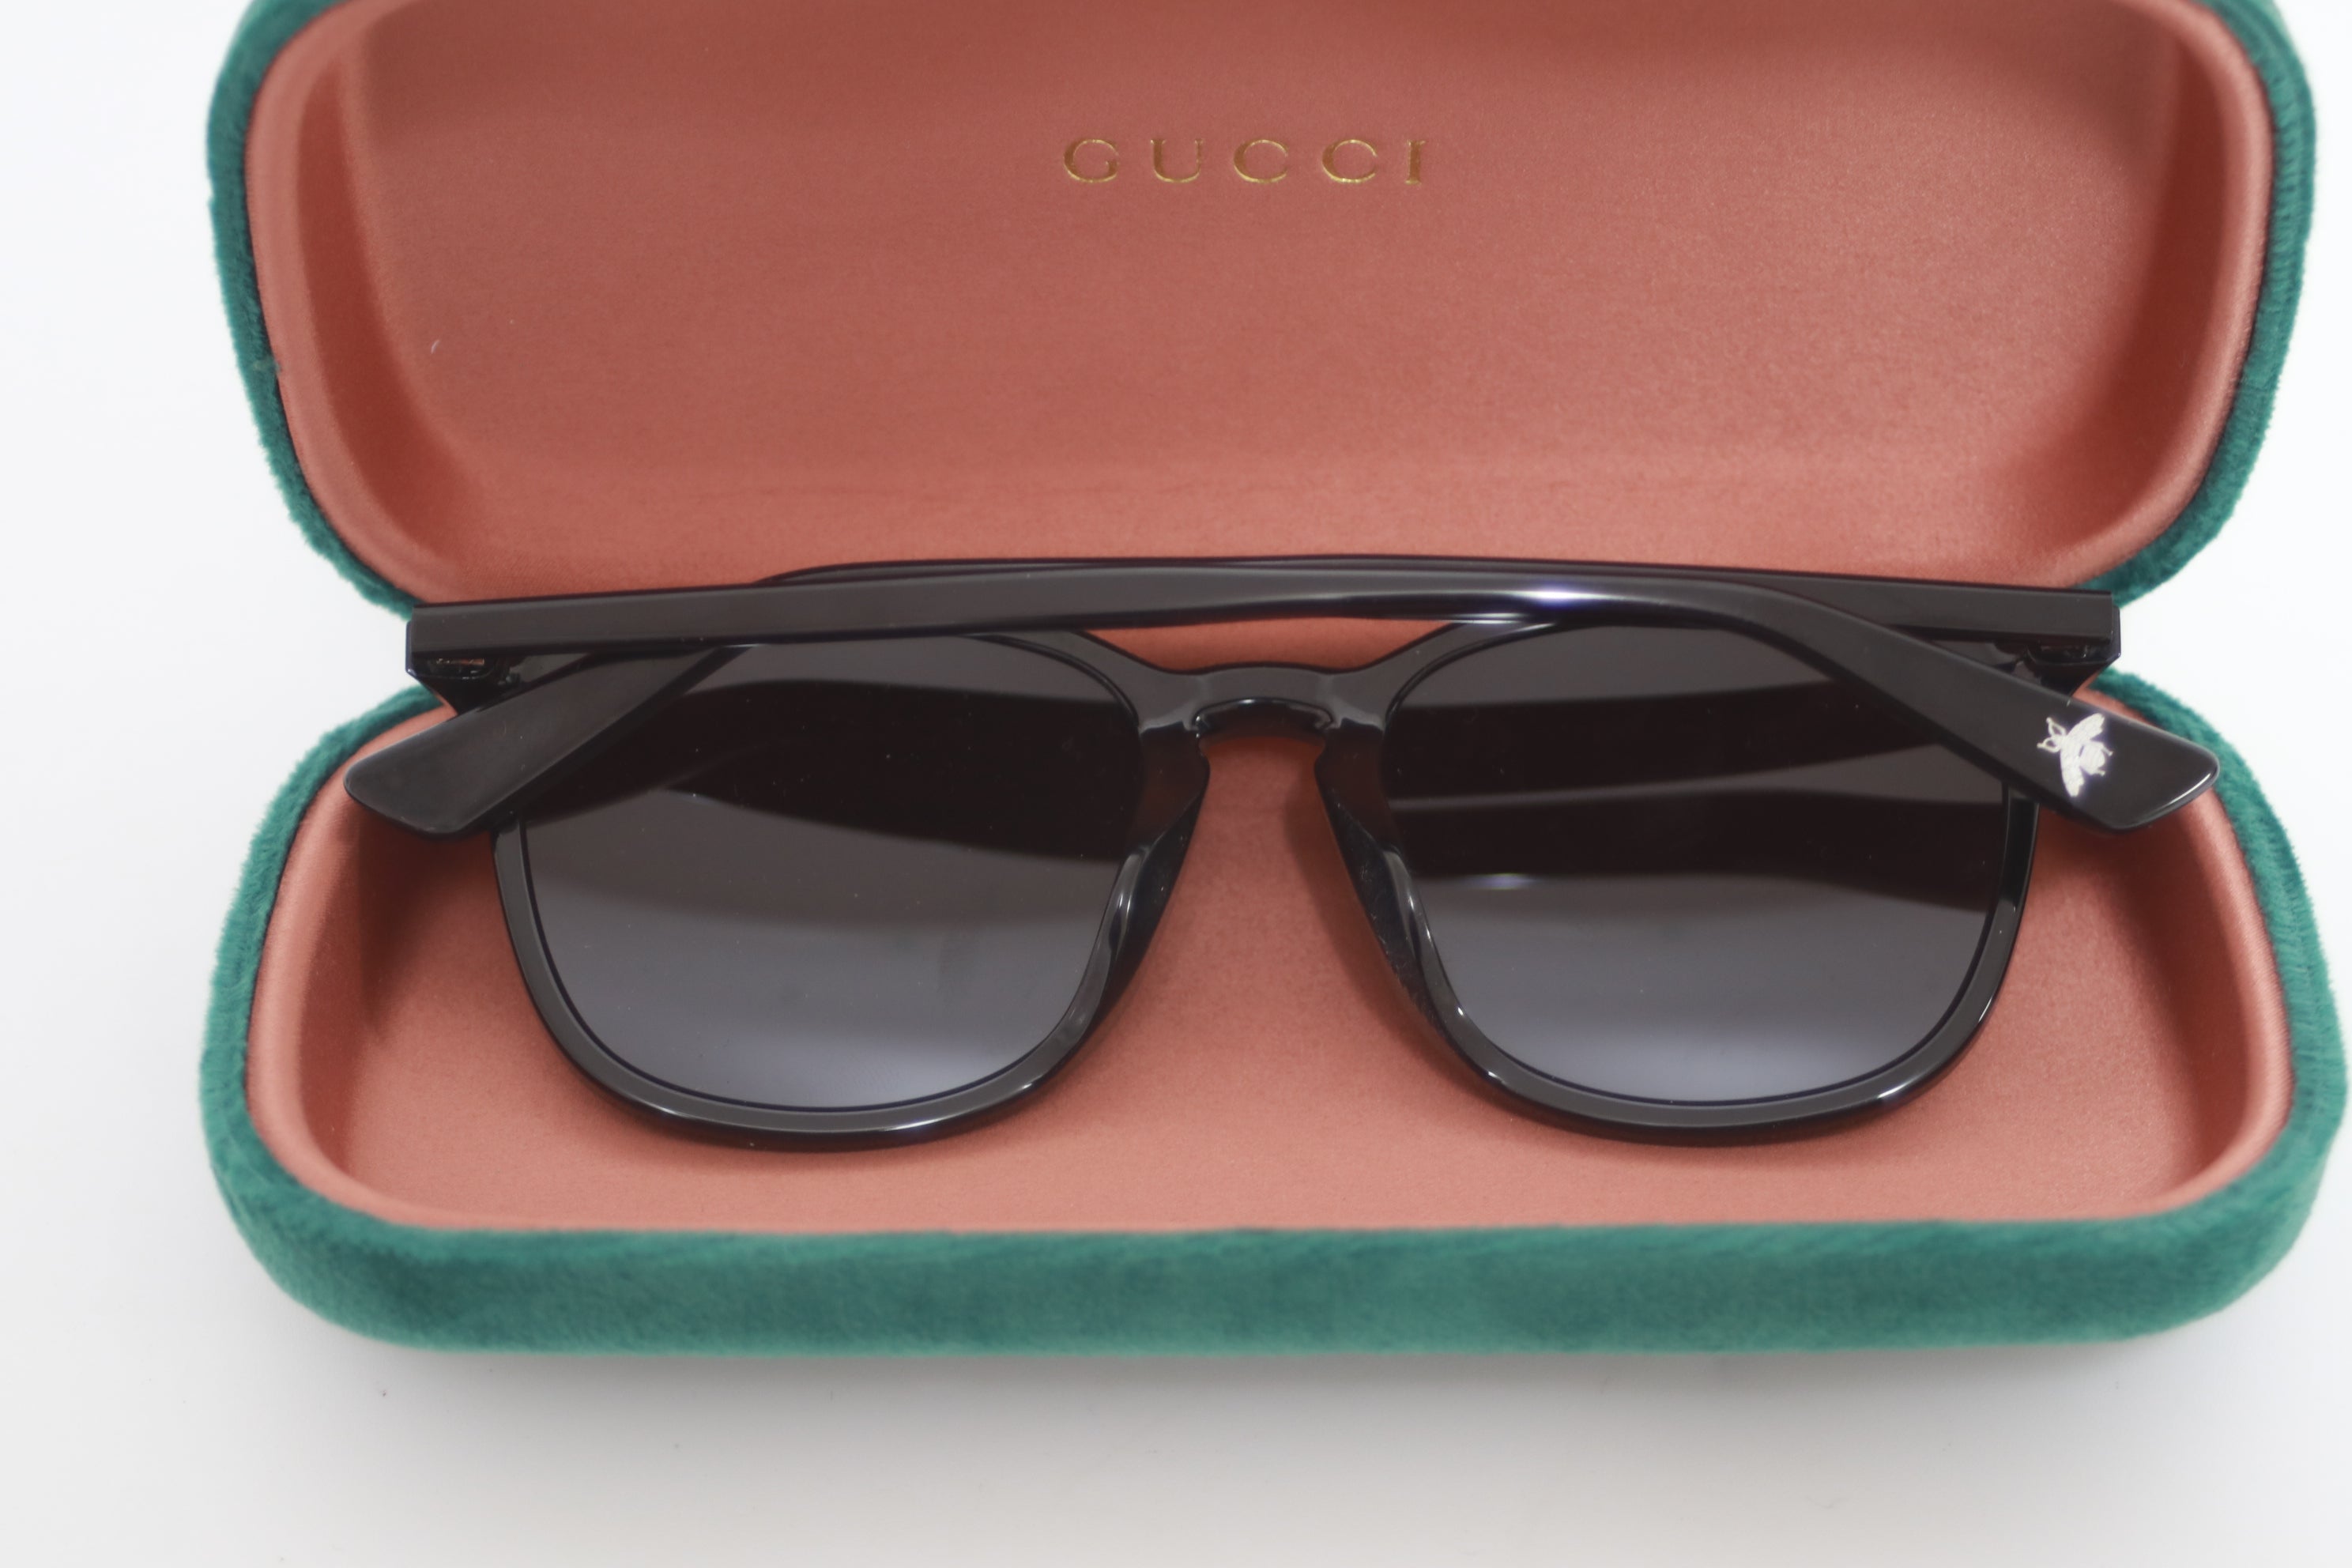 Gucci Sunglasses Used (8143)